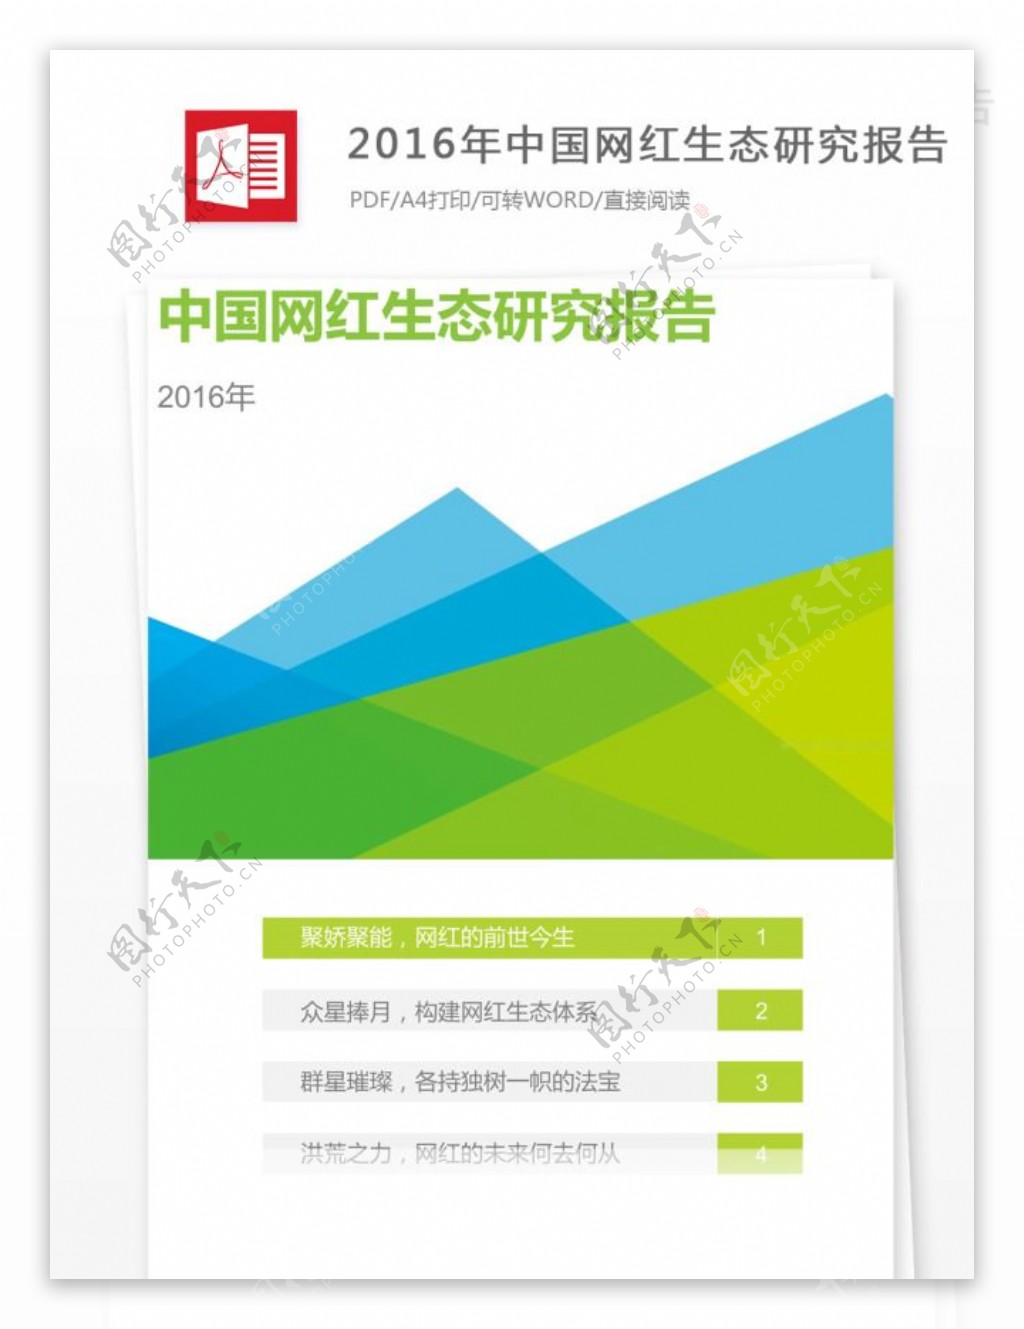 2016年中国网红生态研究报告